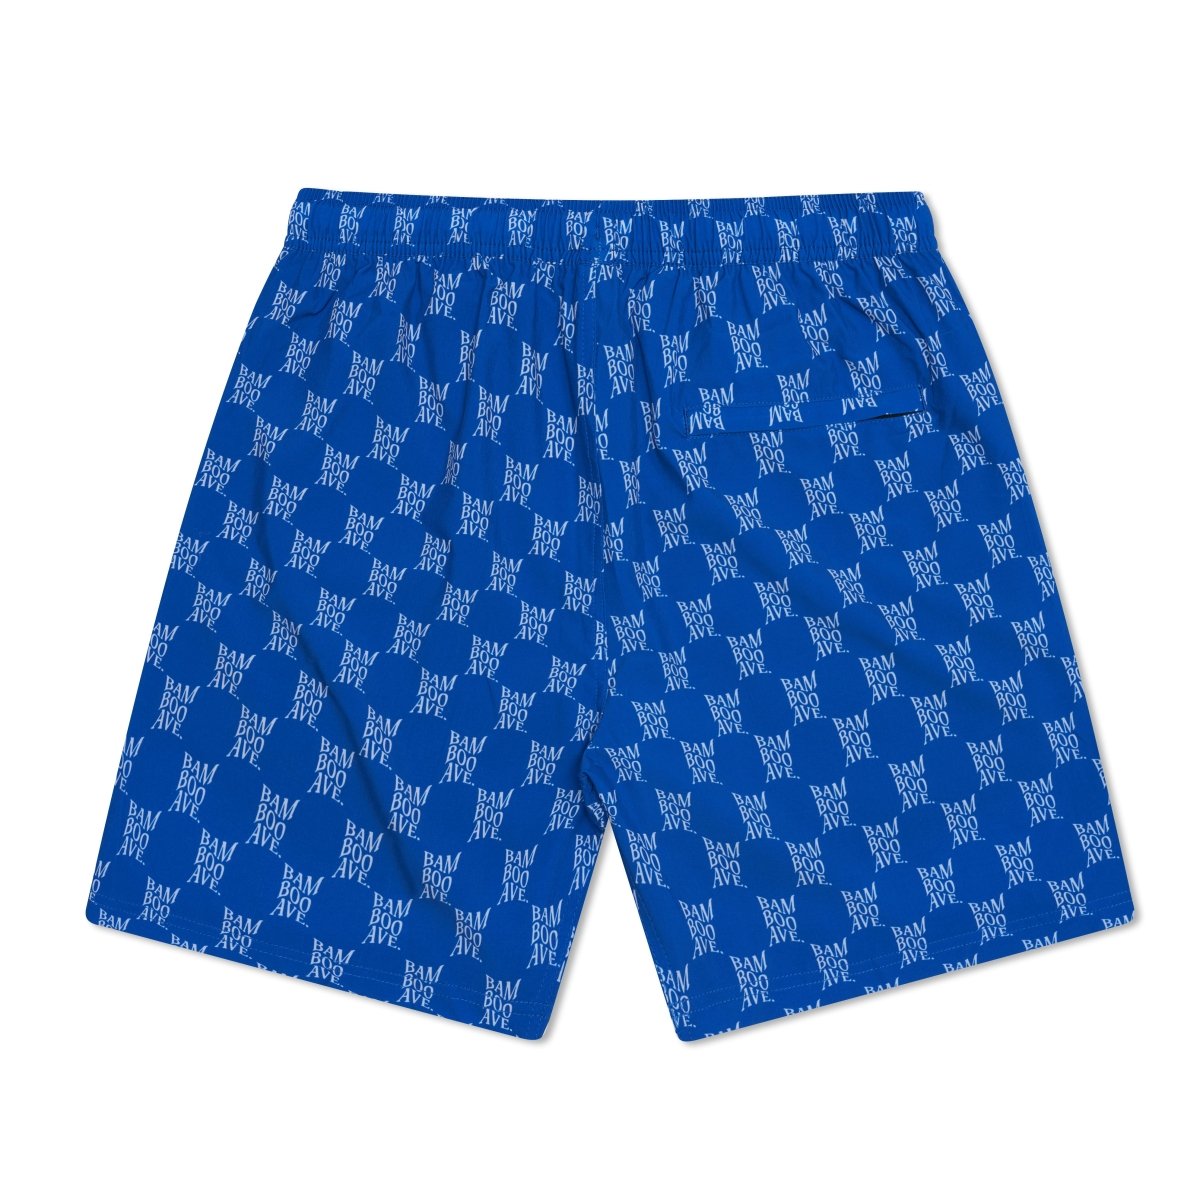 First Class 5” - Cobalt Blue Shorts - Bamboo Ave. - Men's Shorts